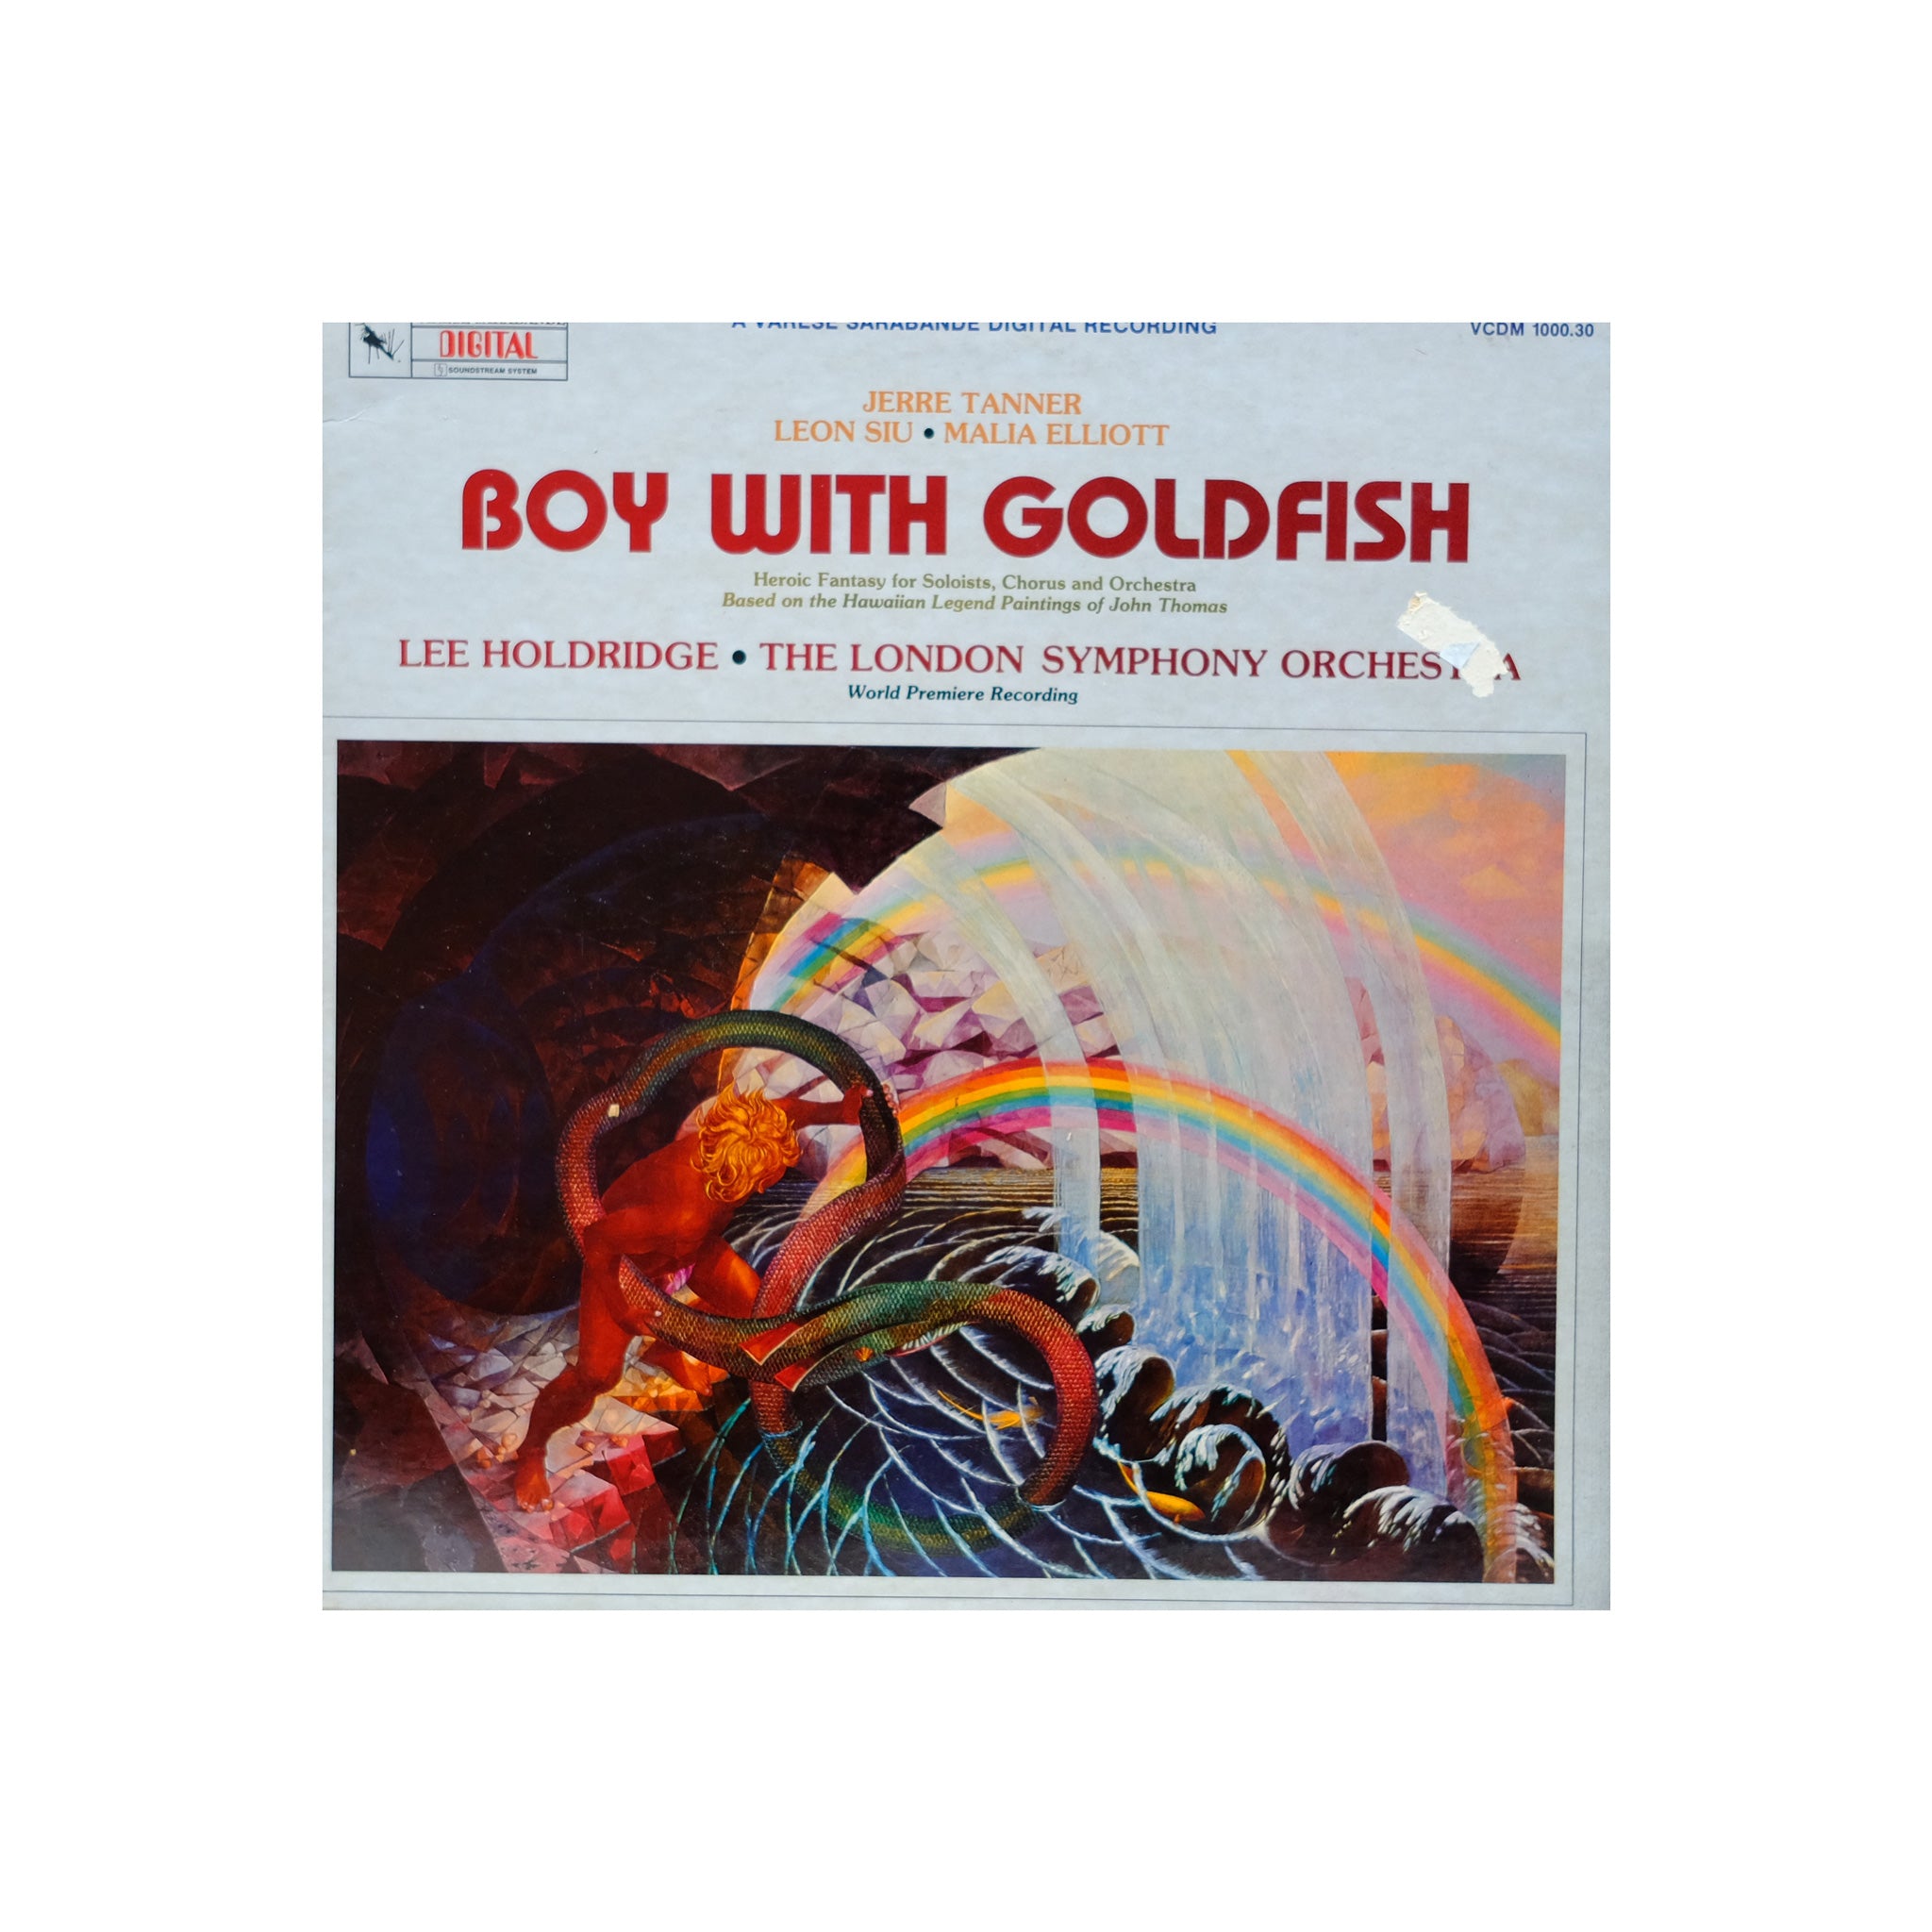 Leon Siu & Malia Elliott - Boy With Goldfish